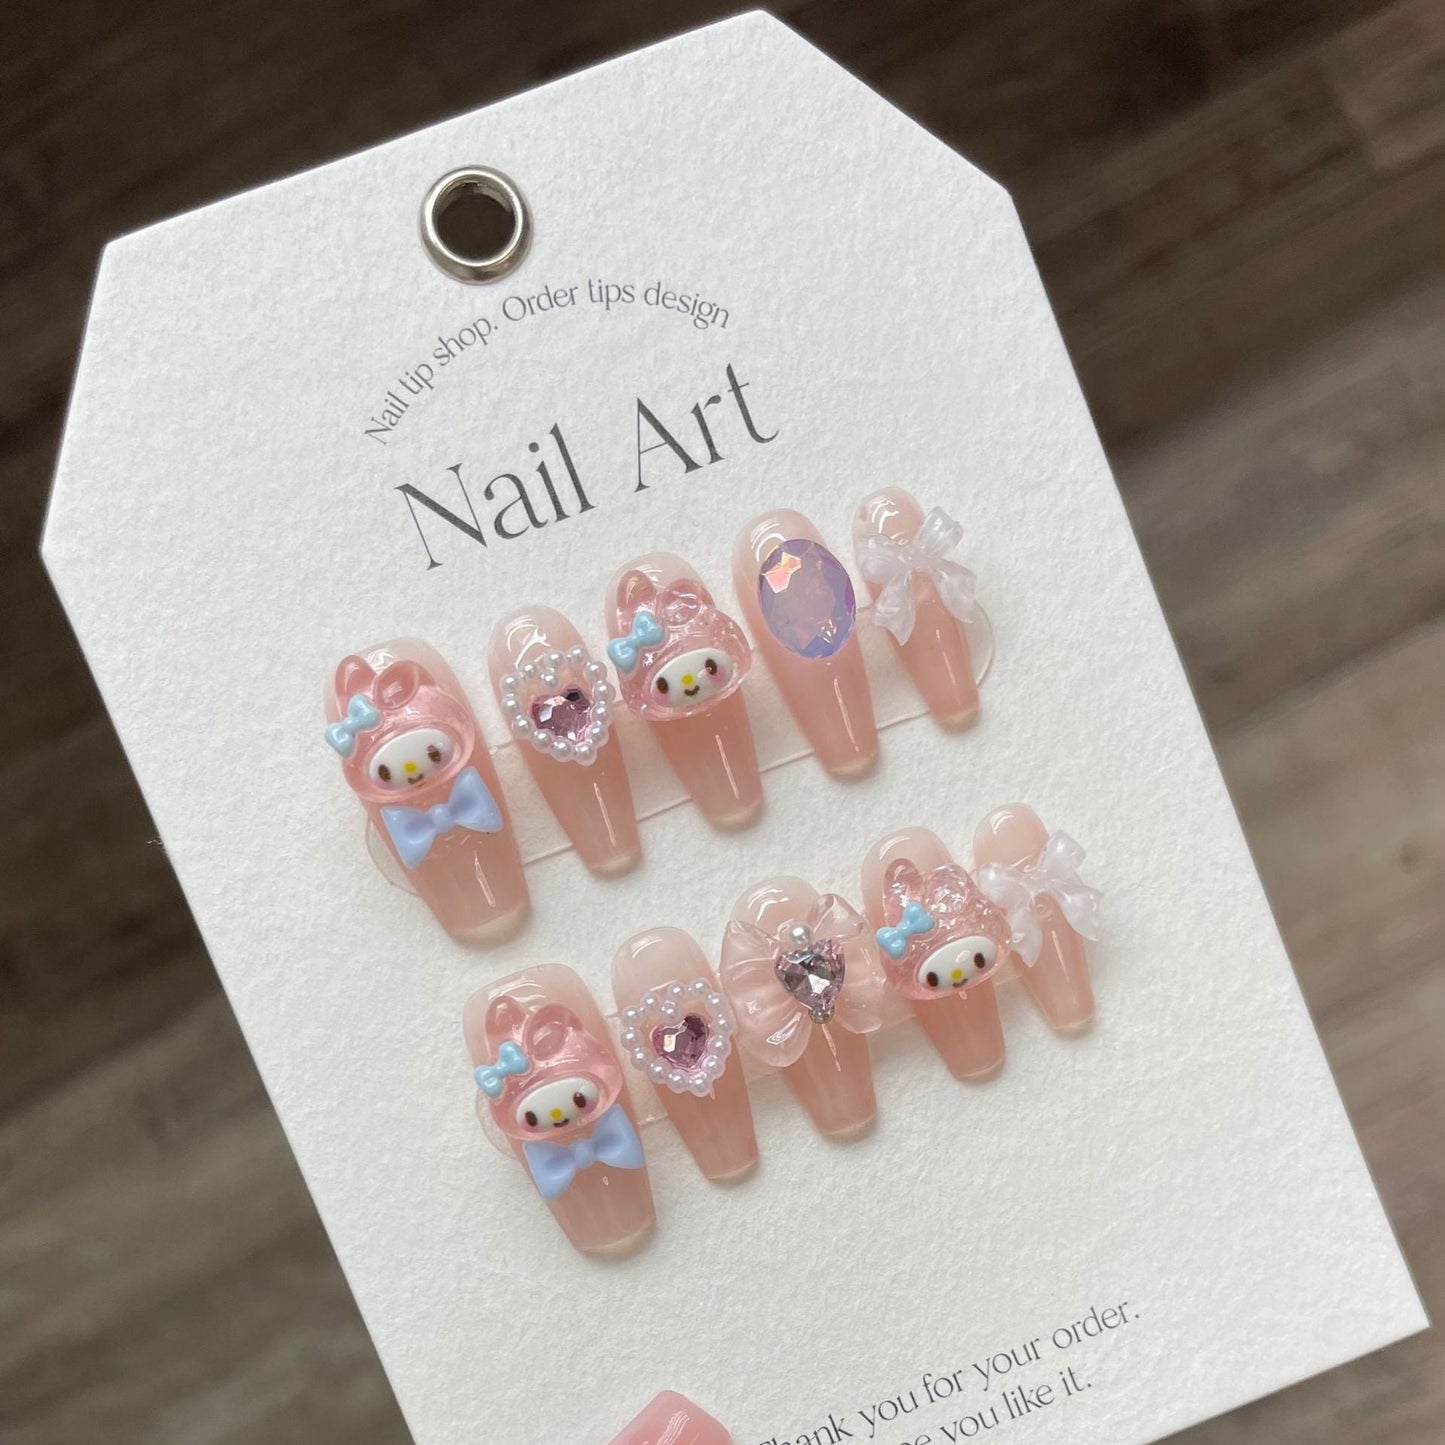 949/955/981 Maiden Kawaii style press on nails 100% handmade false nails pink